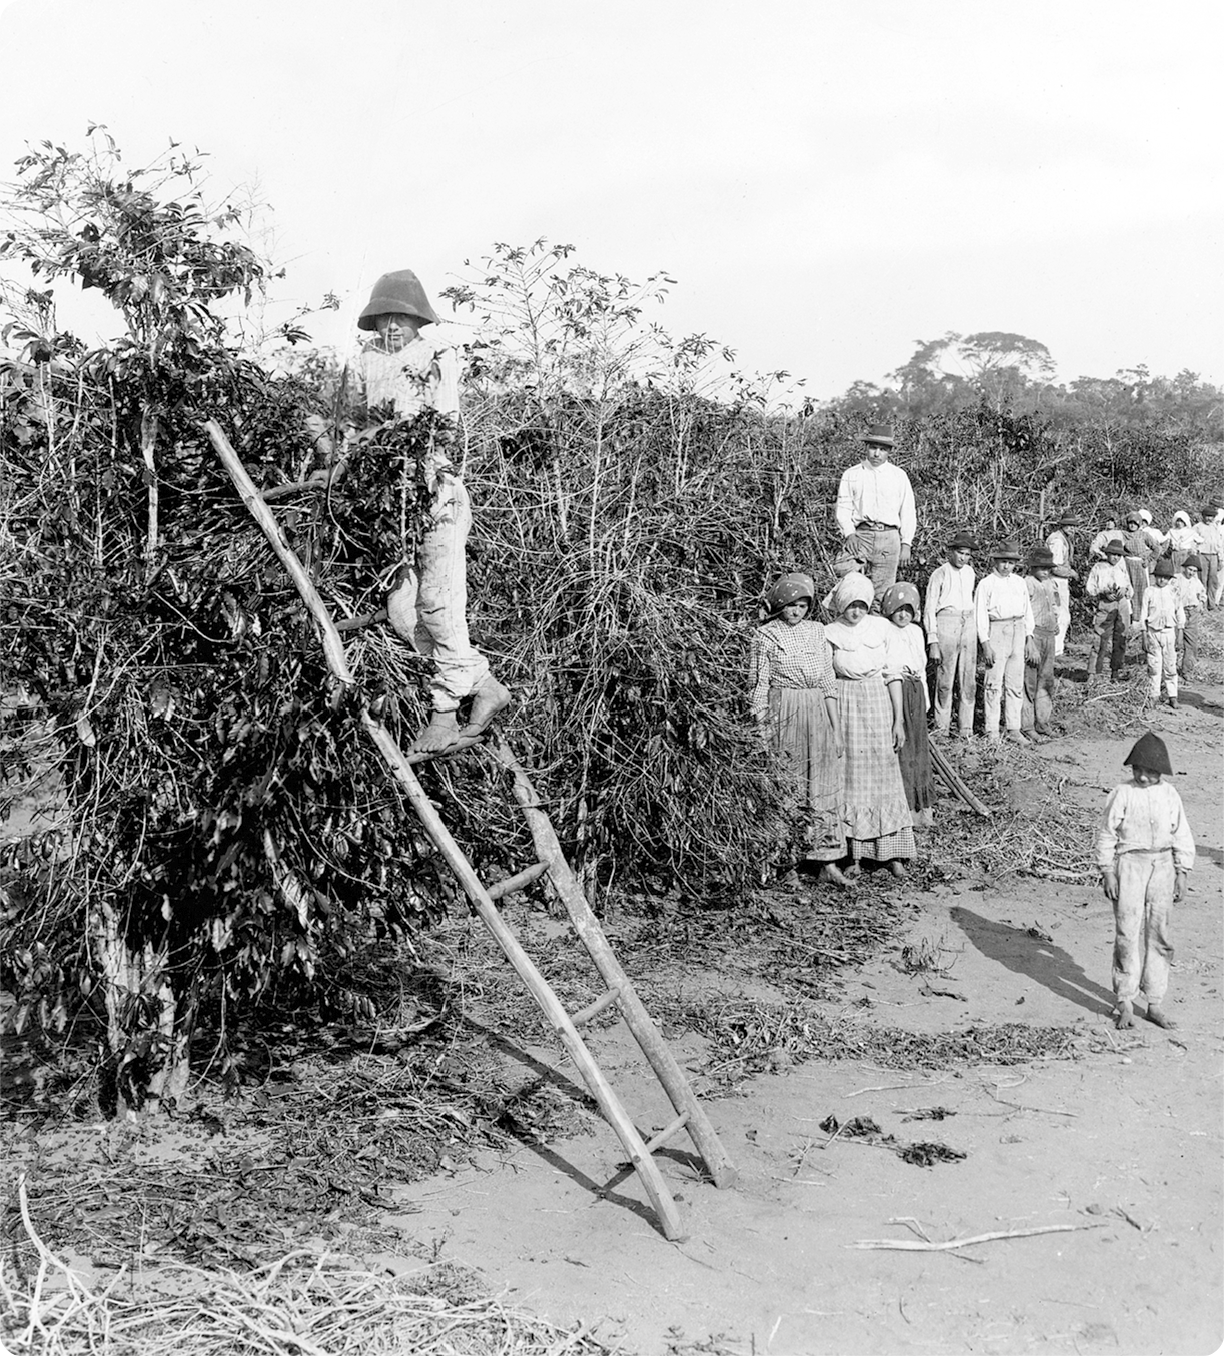 Fotografia em preto e branco. No primeiro plano, à esquerda, um menino, usando chapéu, camisa e calça, está em cima de uma escada encostada em um pé de café. Ao fundo, homens, mulheres e crianças em pé e ao lado de uma plantação.